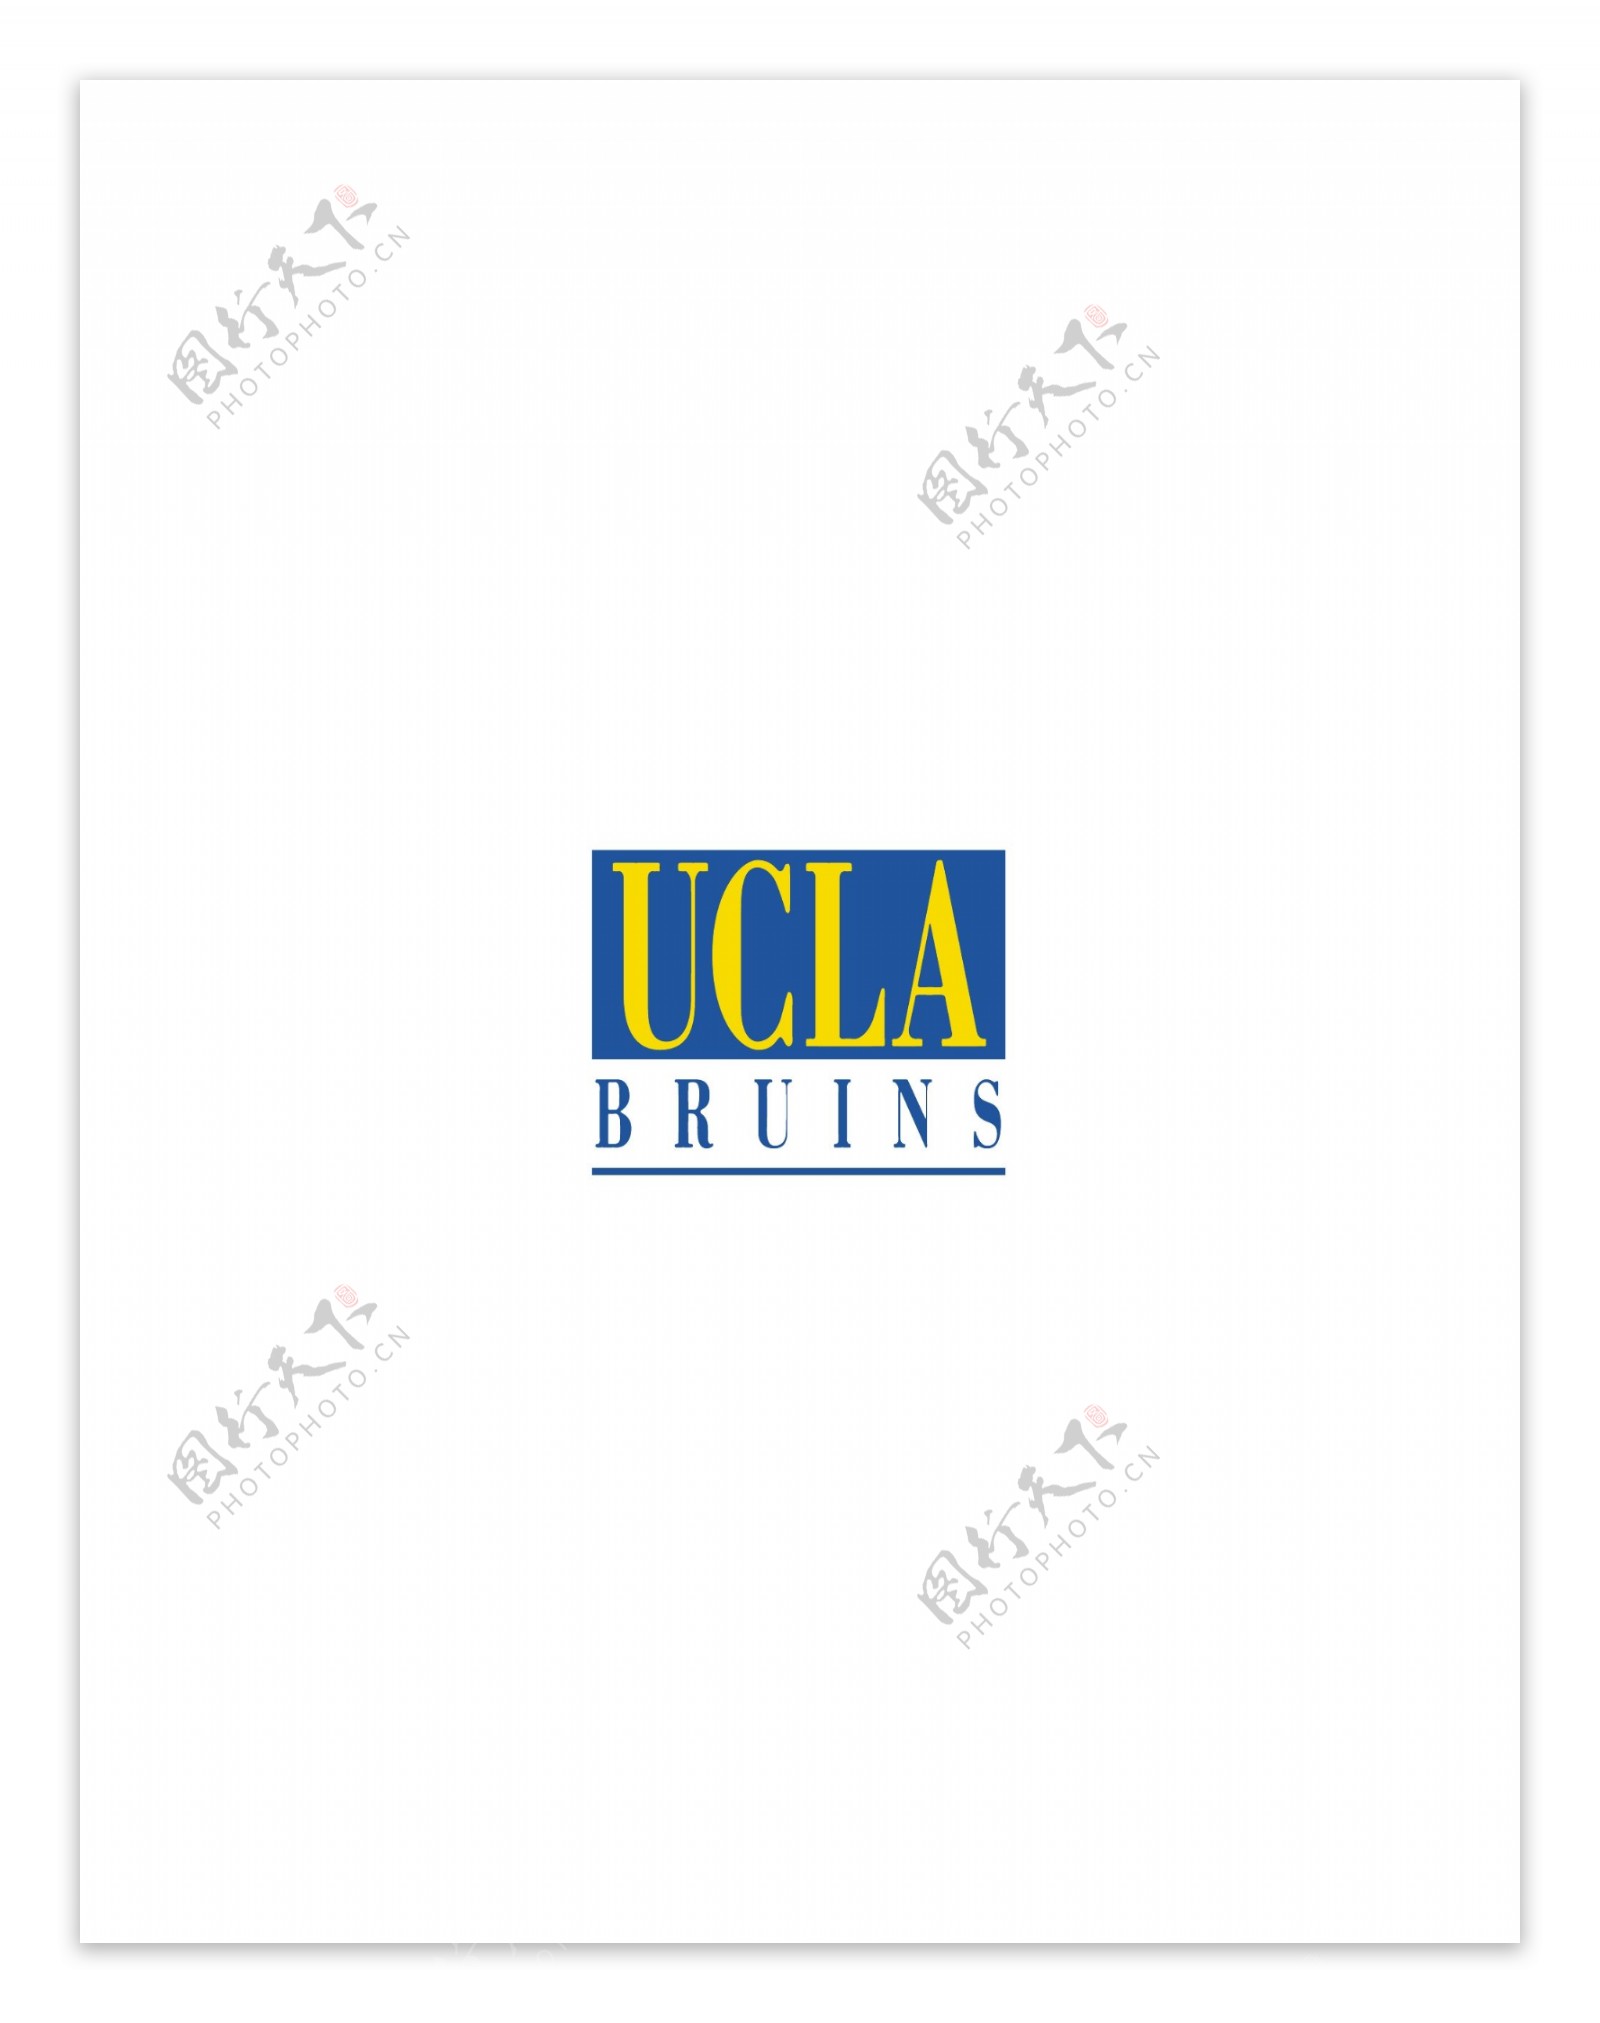 UCLABruinslogo设计欣赏UCLABruins传统大学标志下载标志设计欣赏